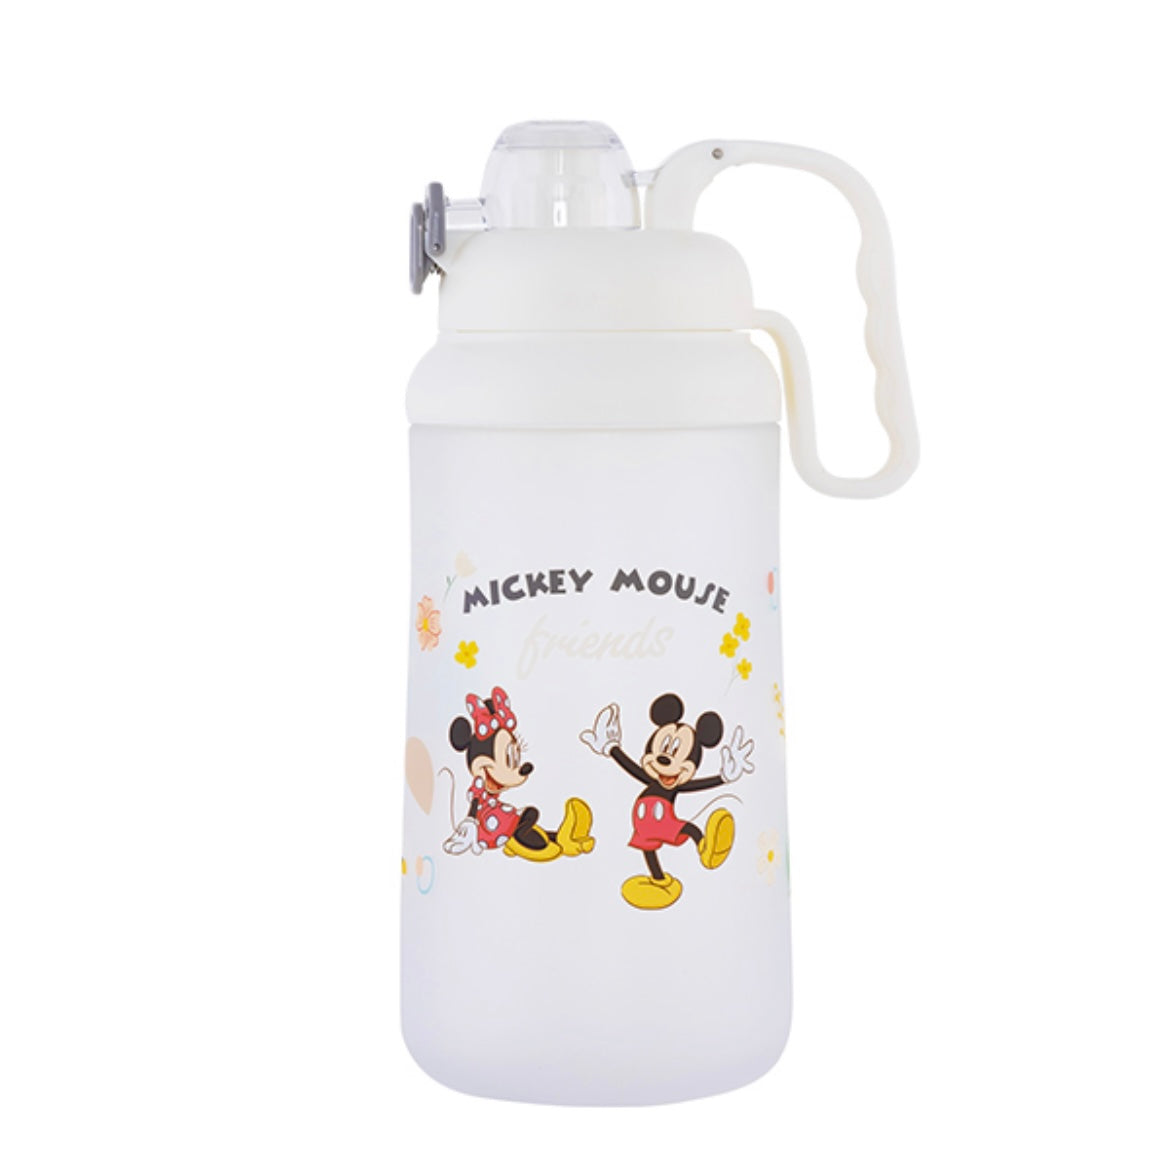 台灣 大容量彈蓋水樽 2000ml  Pooh / Mickey & Minnie